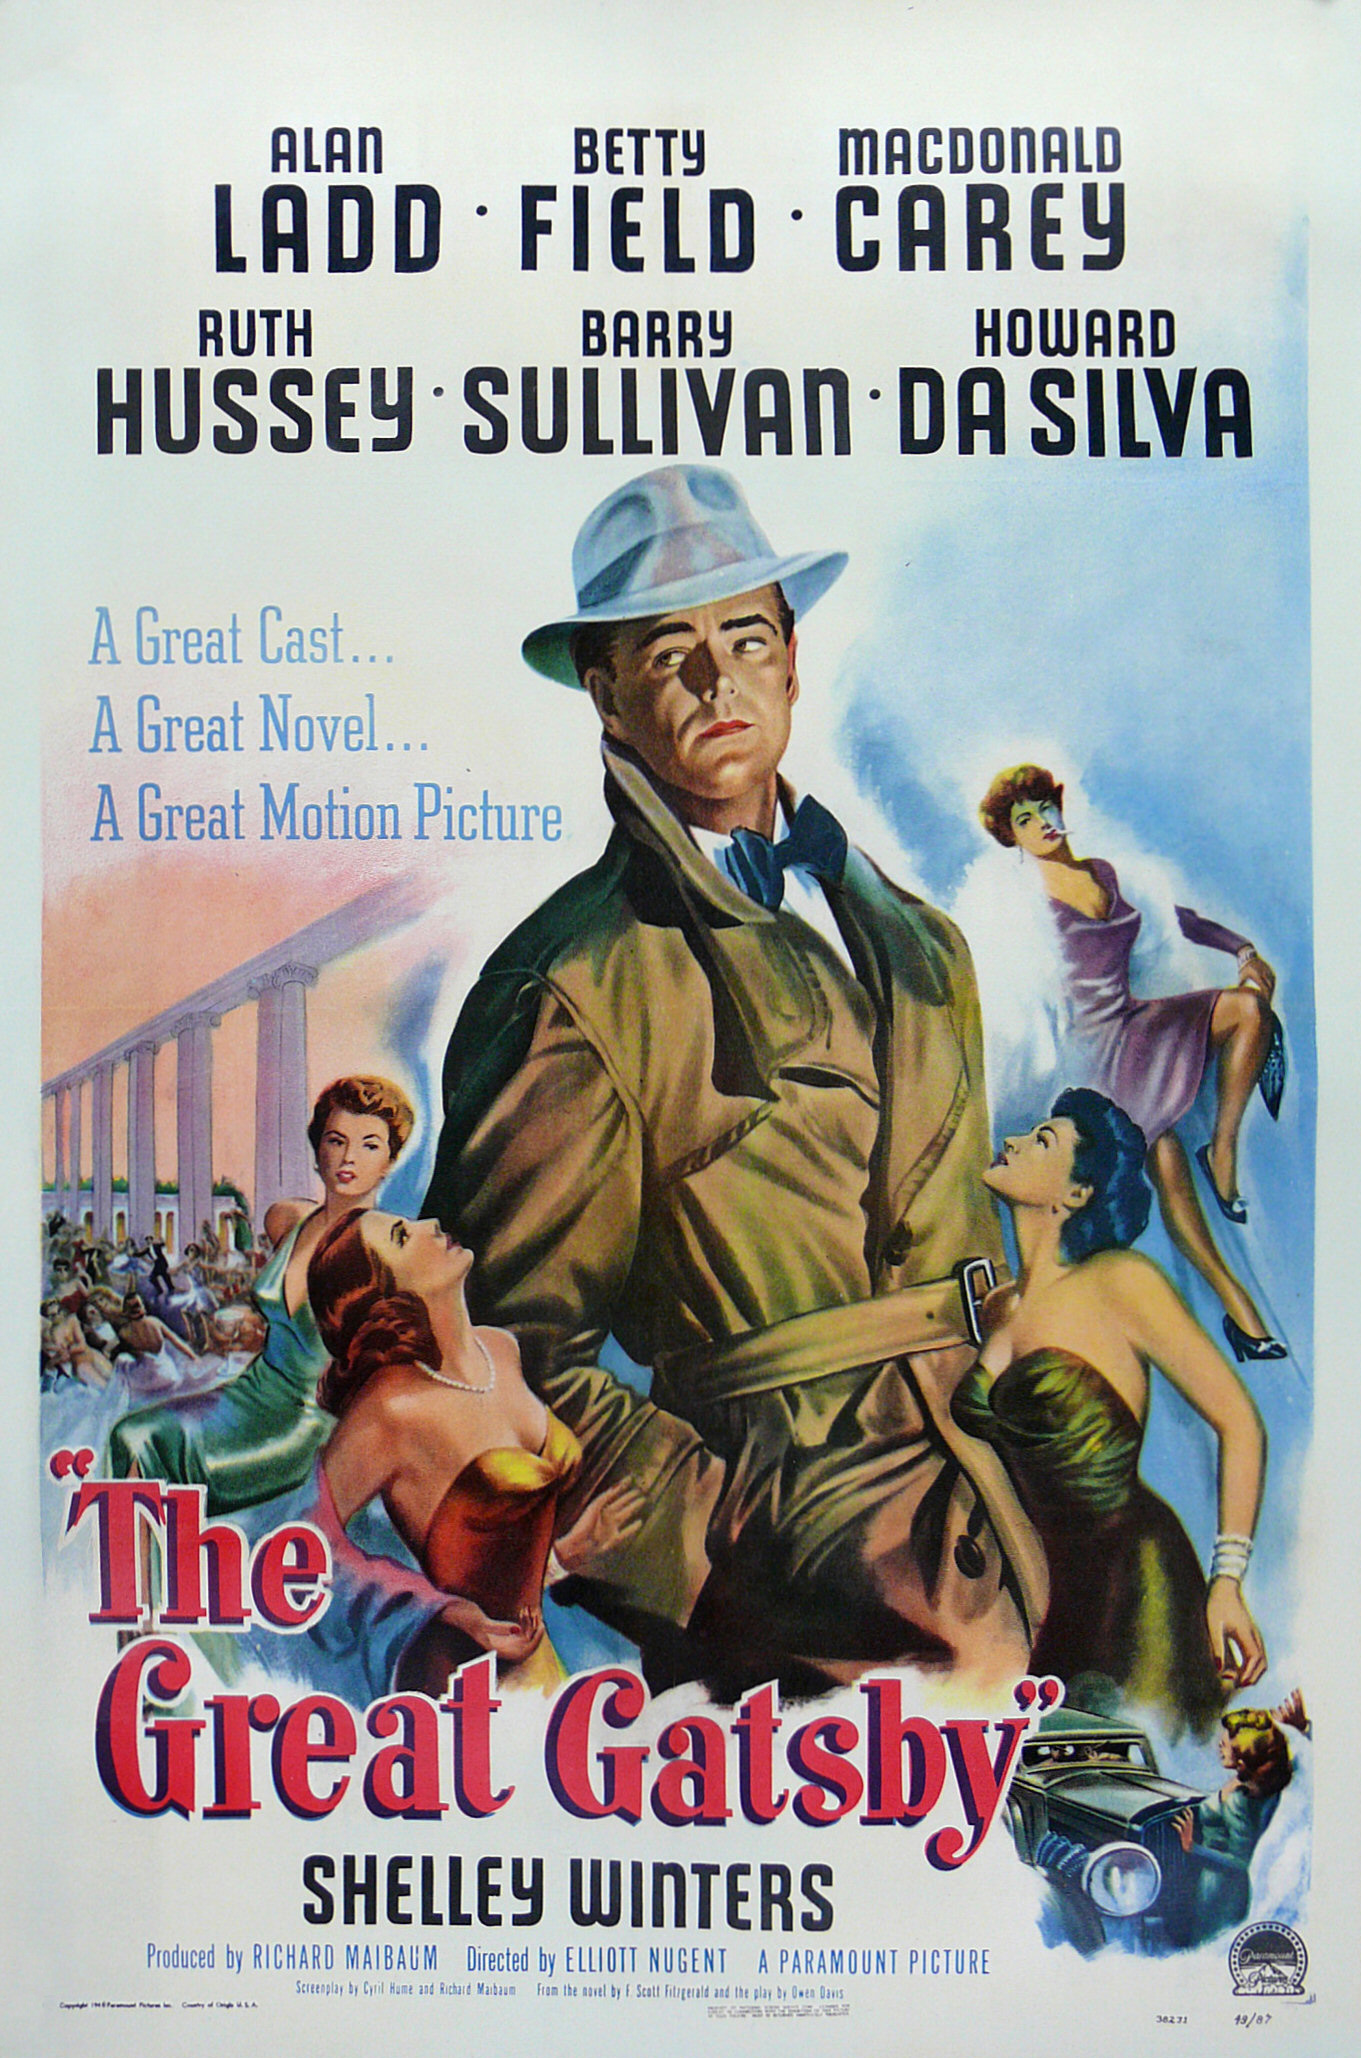 Sinema Sanattır: Muhteşem Afişlere Sahip 20 Film 18 – 1949 The Great Gatsby 1